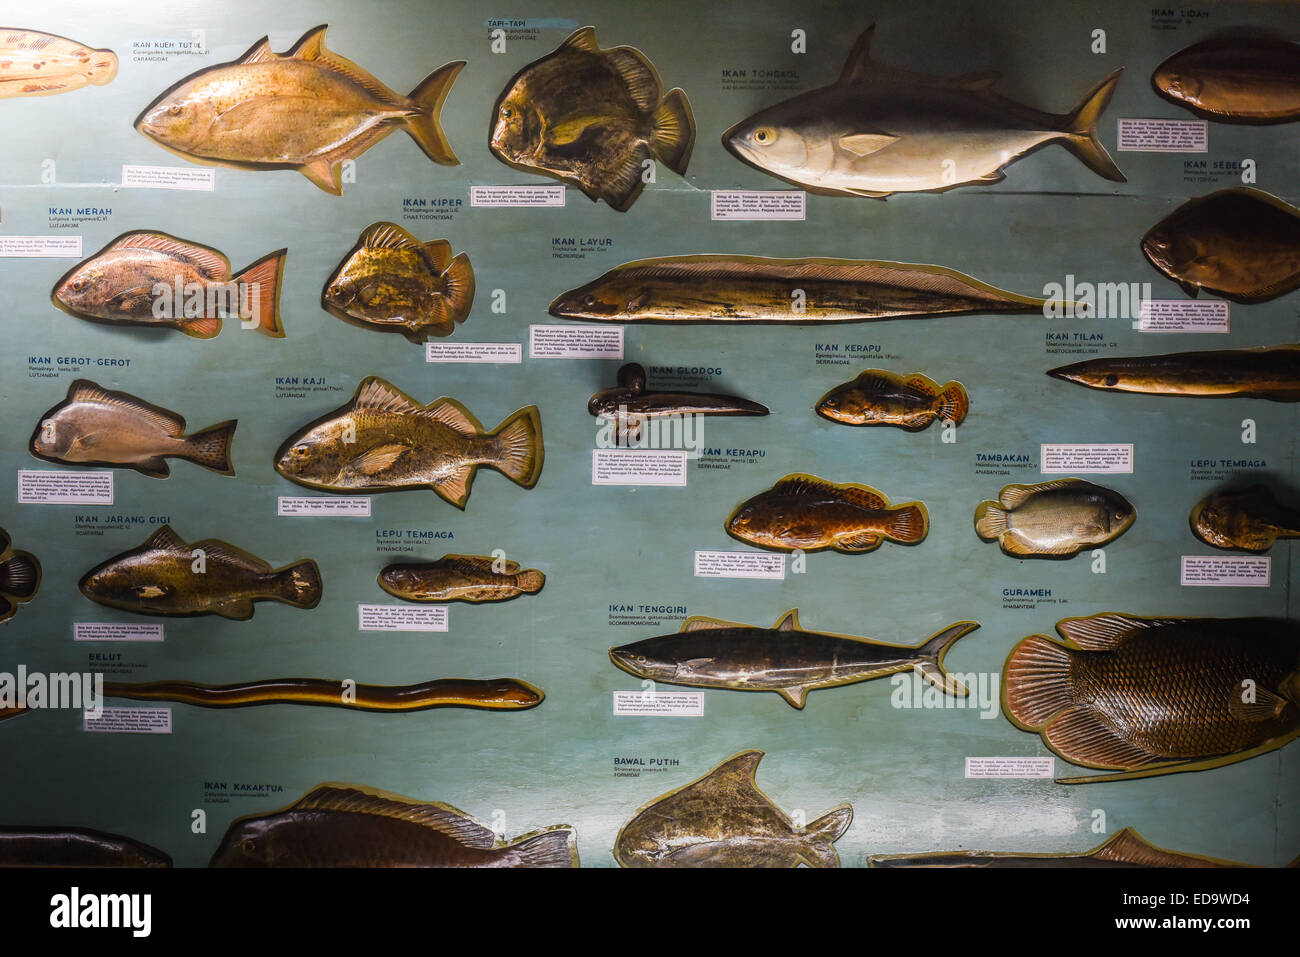 Exposition des spécimens d'espèces de poissons vivant dans les eaux indonésiennes, au Zoologie Museum de Bogor, Java Ouest, Indonésie. Banque D'Images